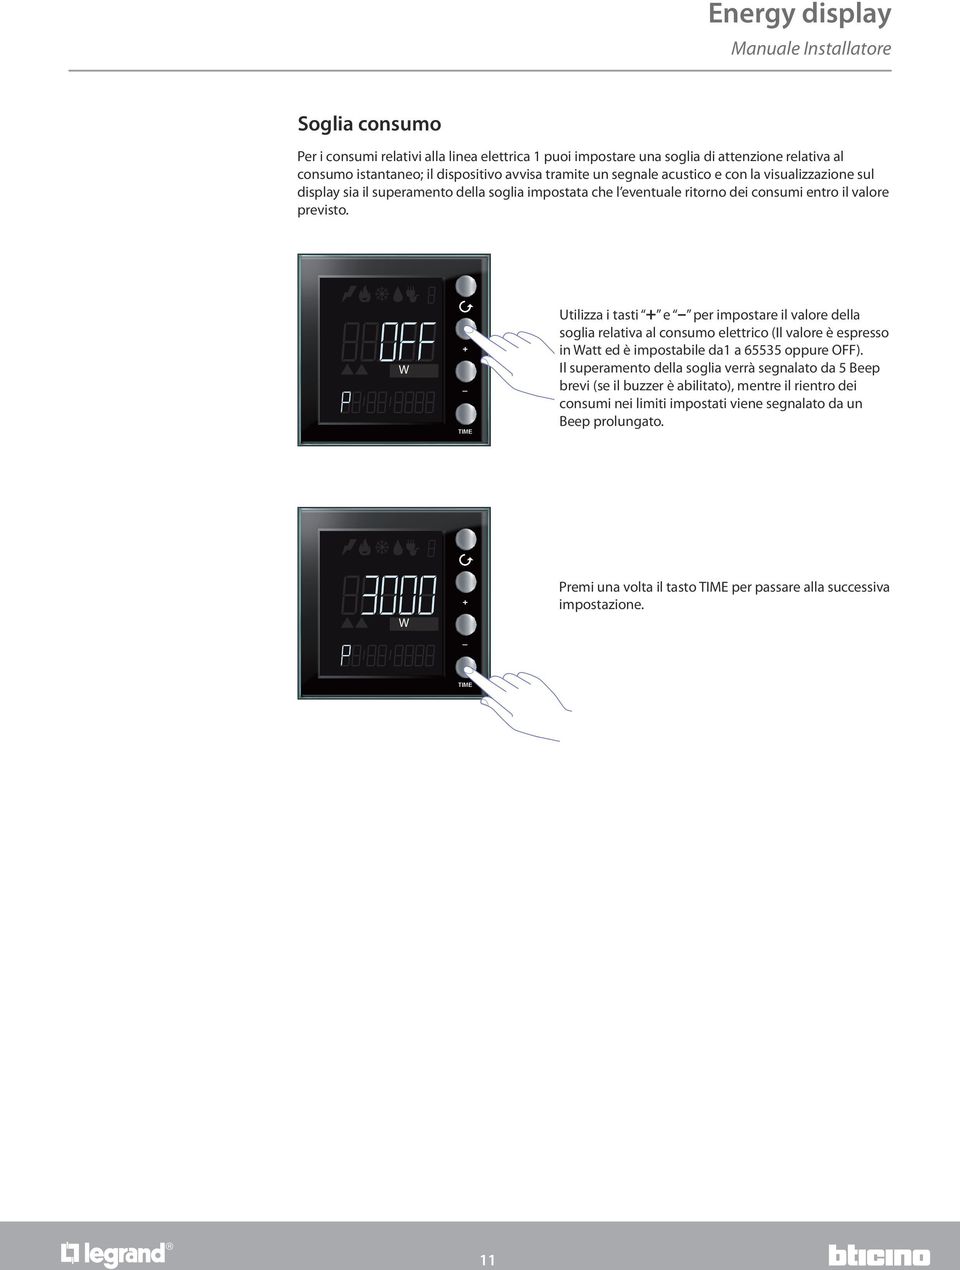 W Utilizza i tasti e per impostare il valore della soglia relativa al consumo elettrico (Il valore è espresso in Watt ed è impostabile da1 a 65535 oppure OFF).